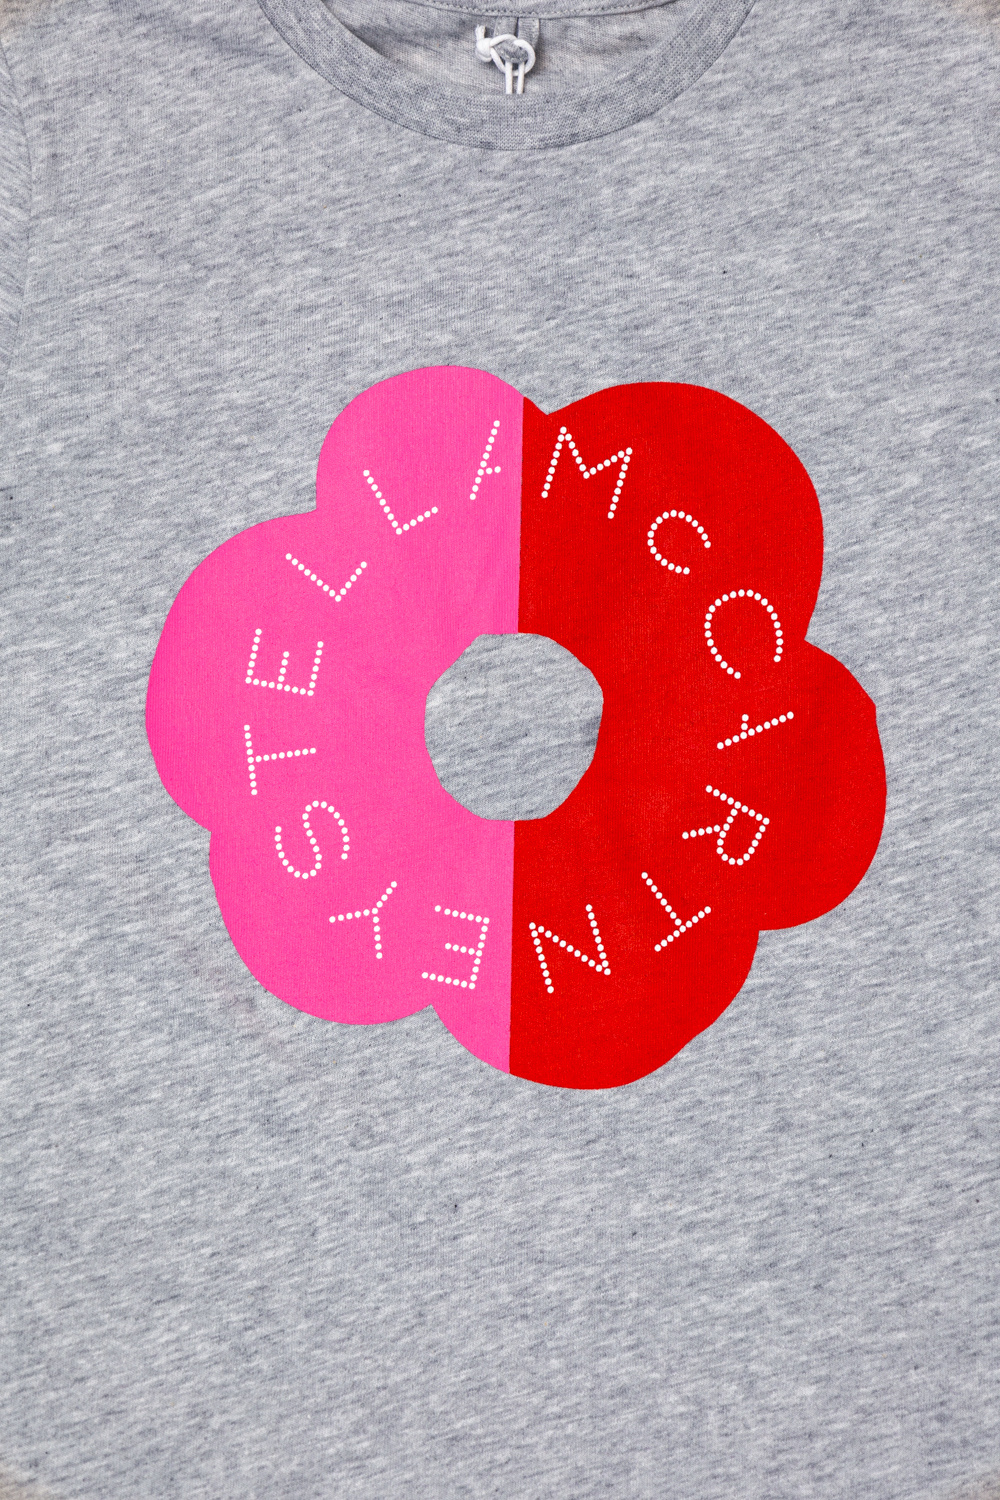 stella Daisy McCartney Kids Printed T-shirt